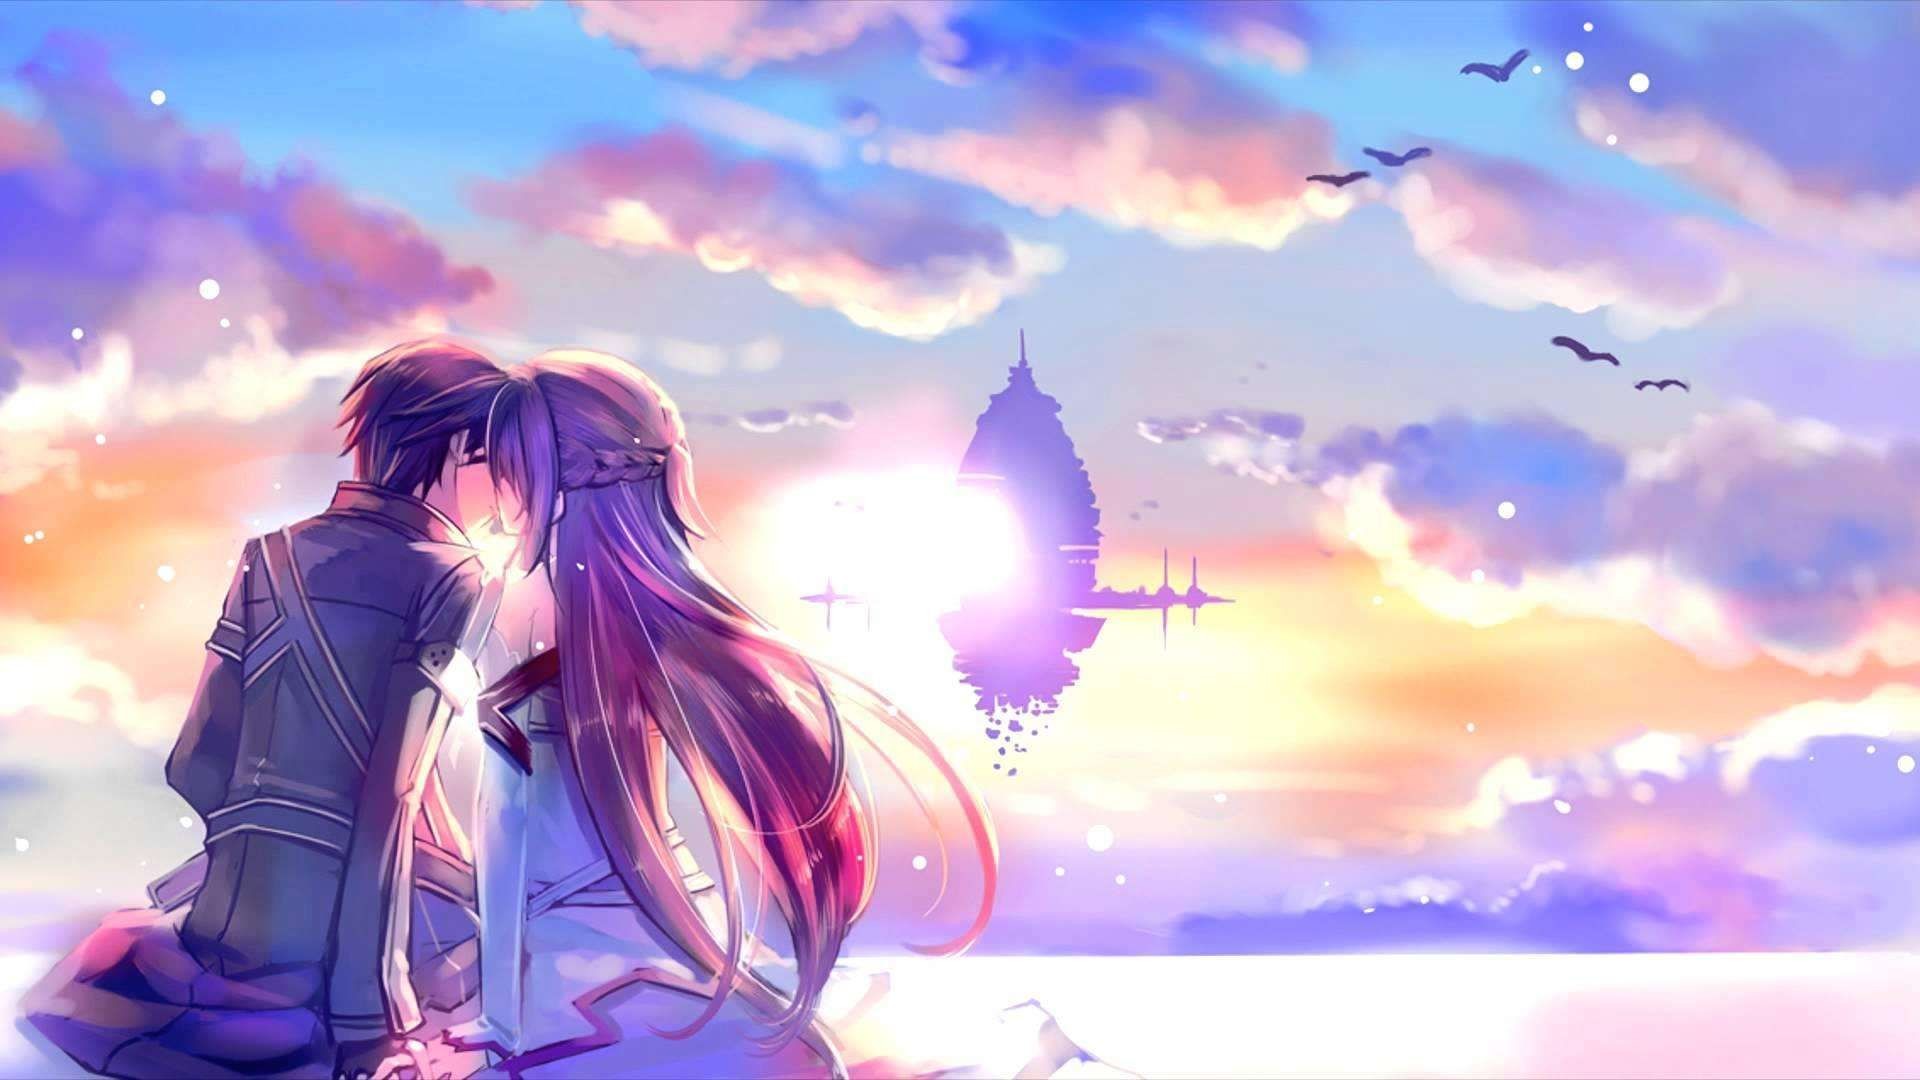 Hình ảnh Anime tình yêu đẹp lung linh